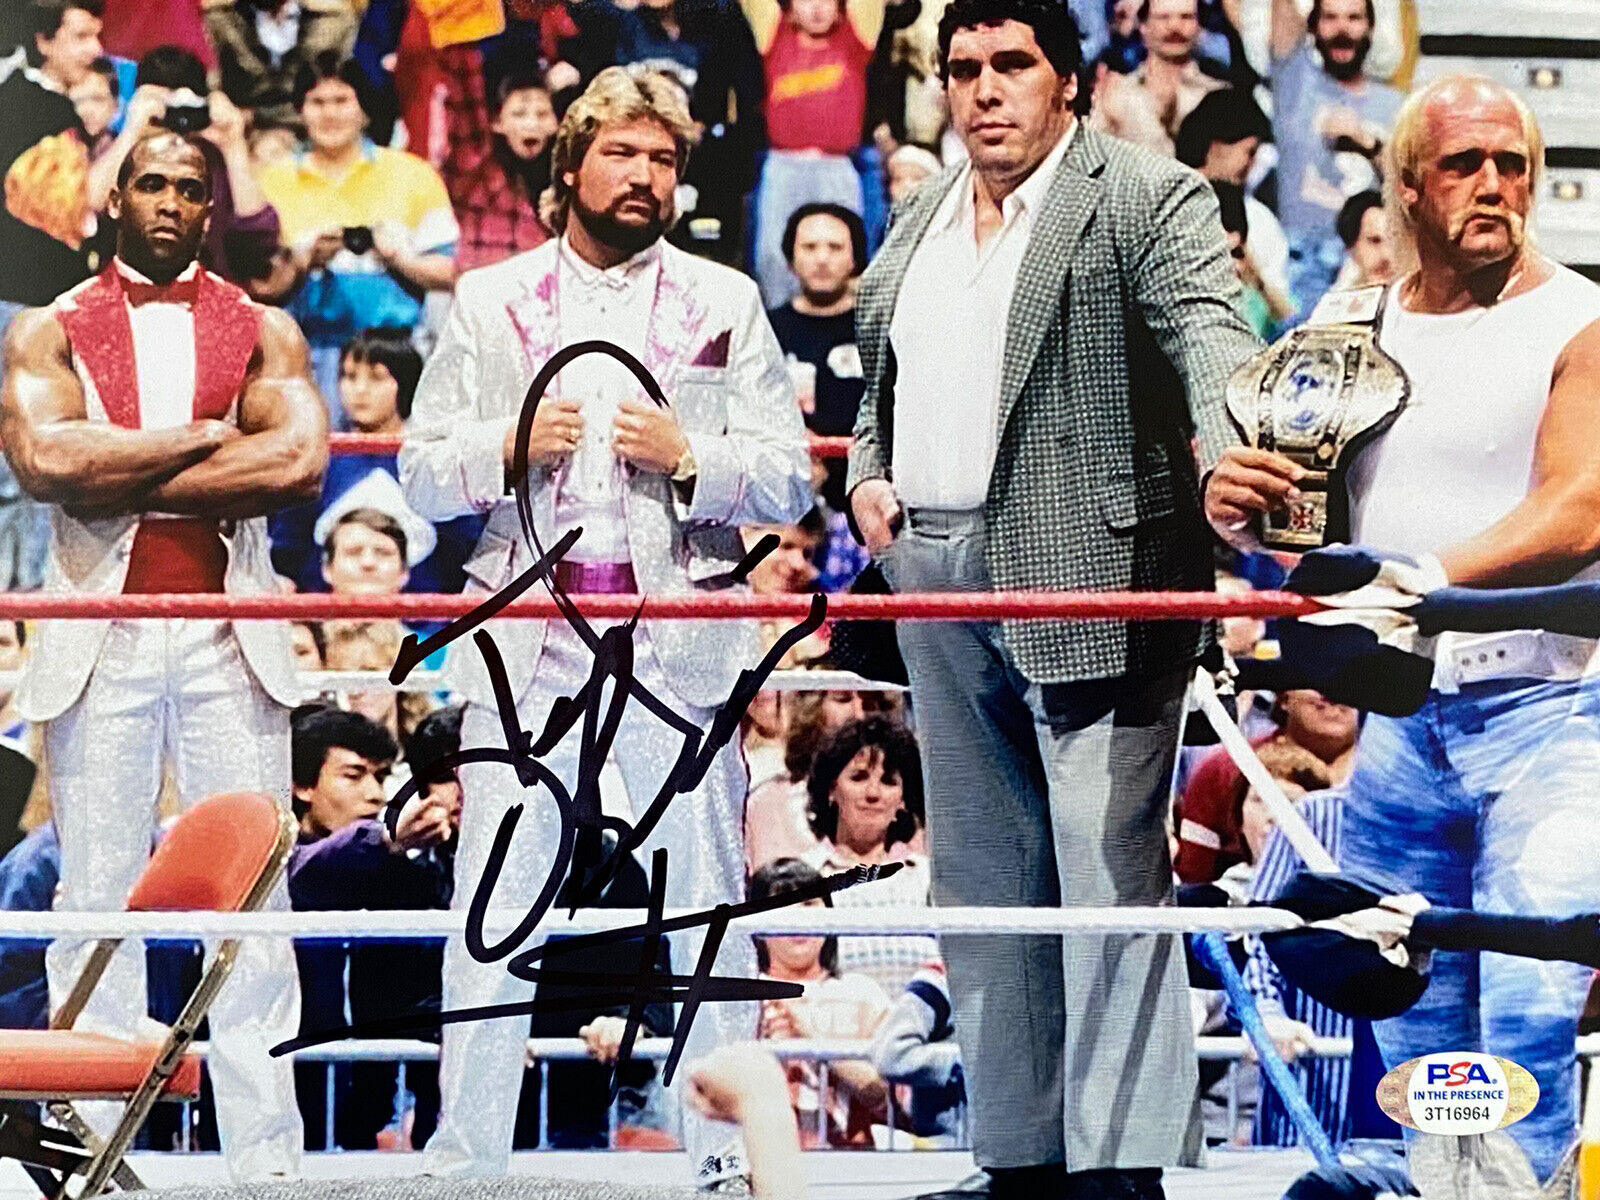 Ted DiBiase MILLION DOLLAR MAN Signed WWE WWF Wrestling 8x10 Photo Poster painting PSA COA